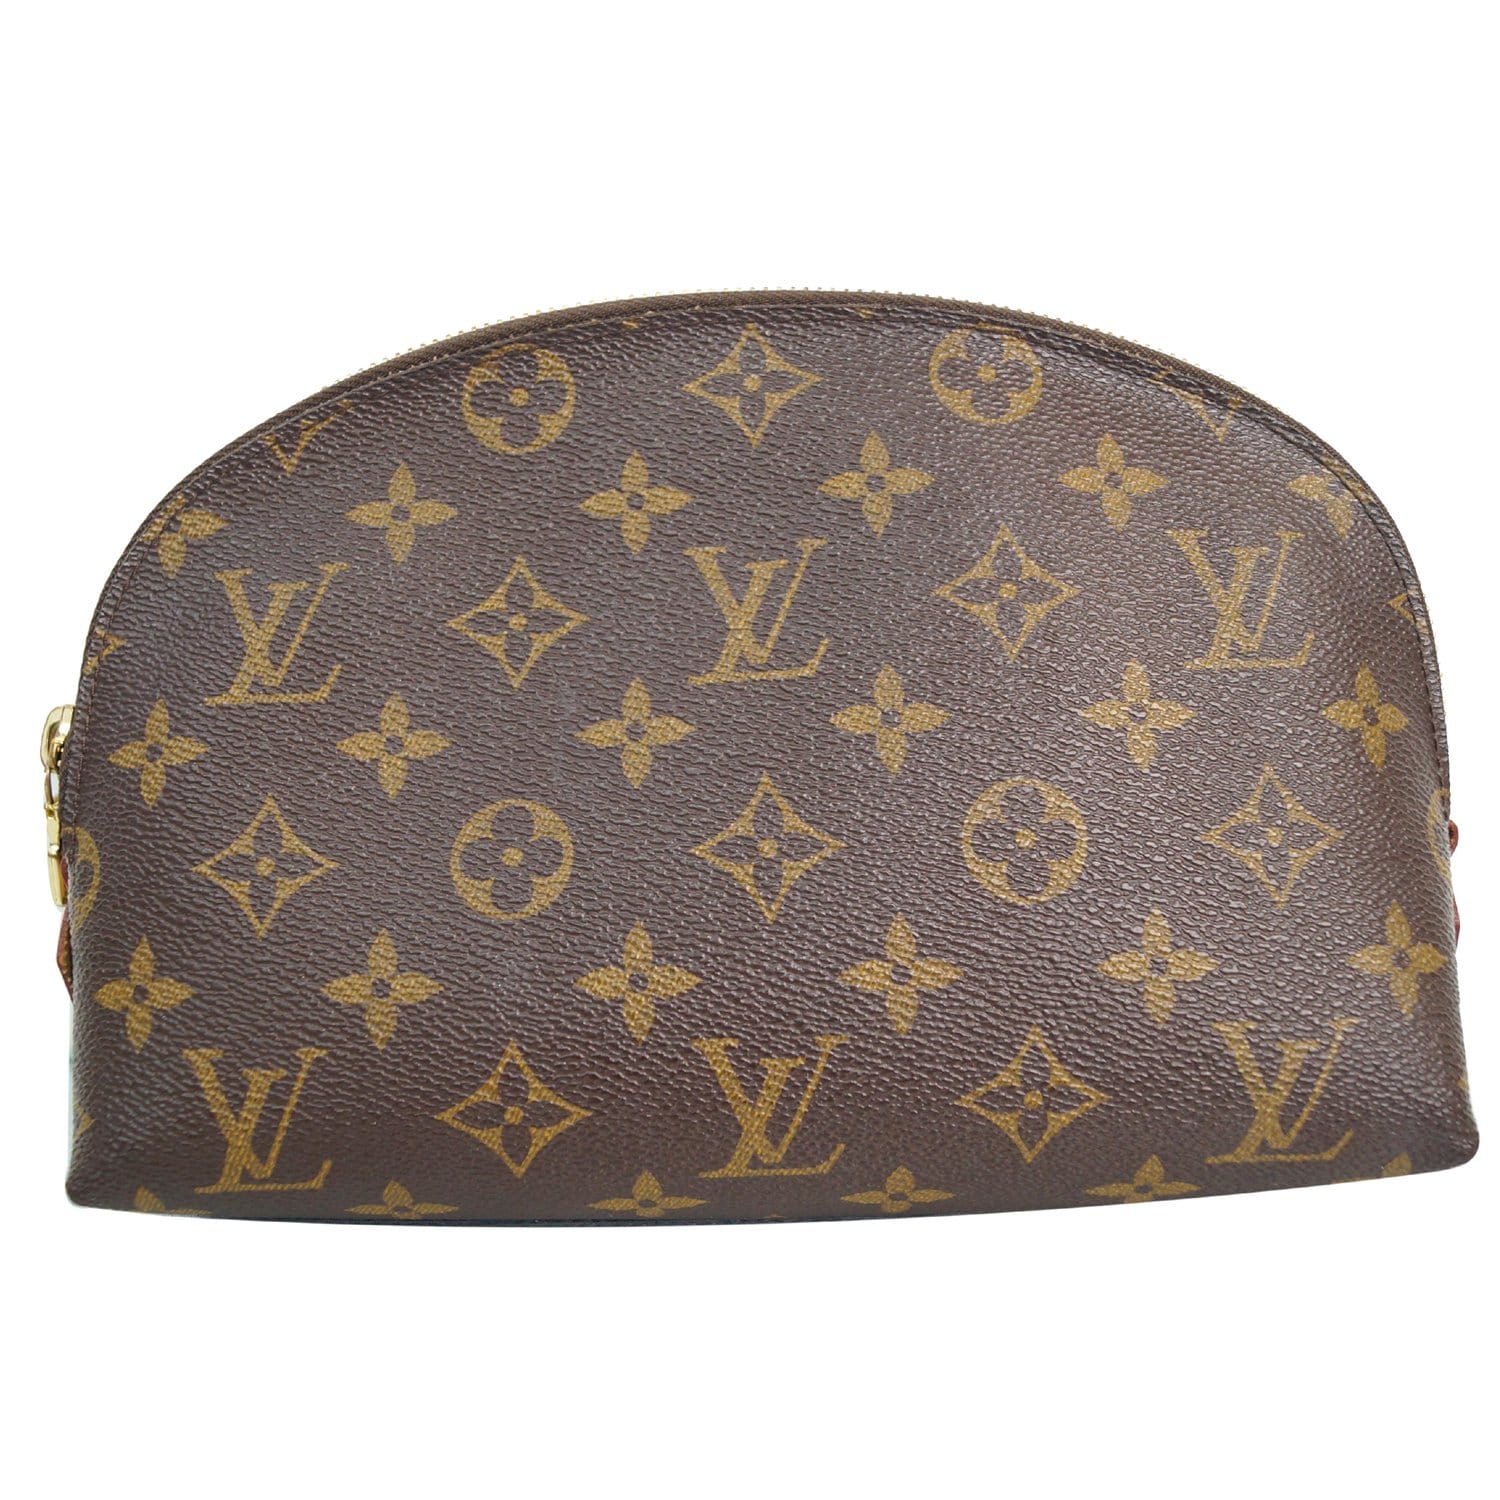 Lot - Louis Vuitton monogram canvas dopp kit makeup bag with leather trim:  7H x 9W x 2 1/4W